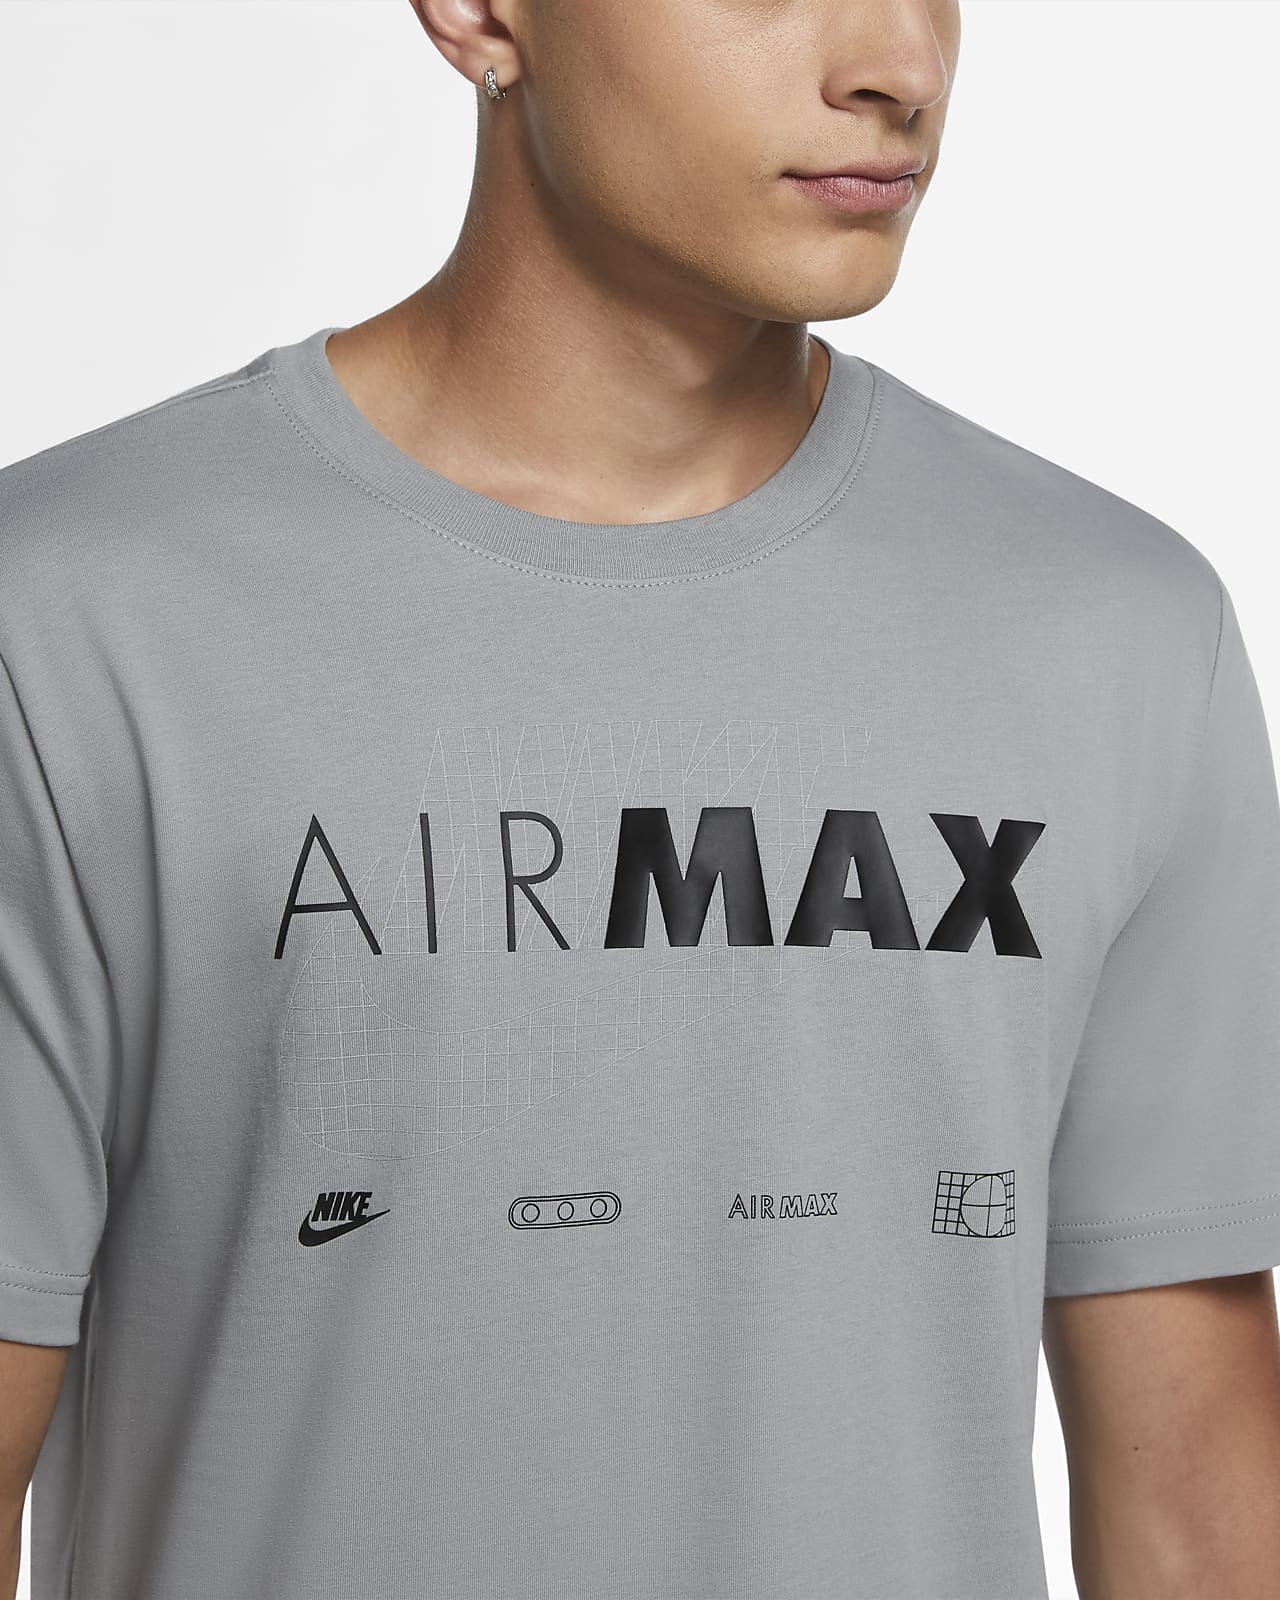 white nike air max t shirt